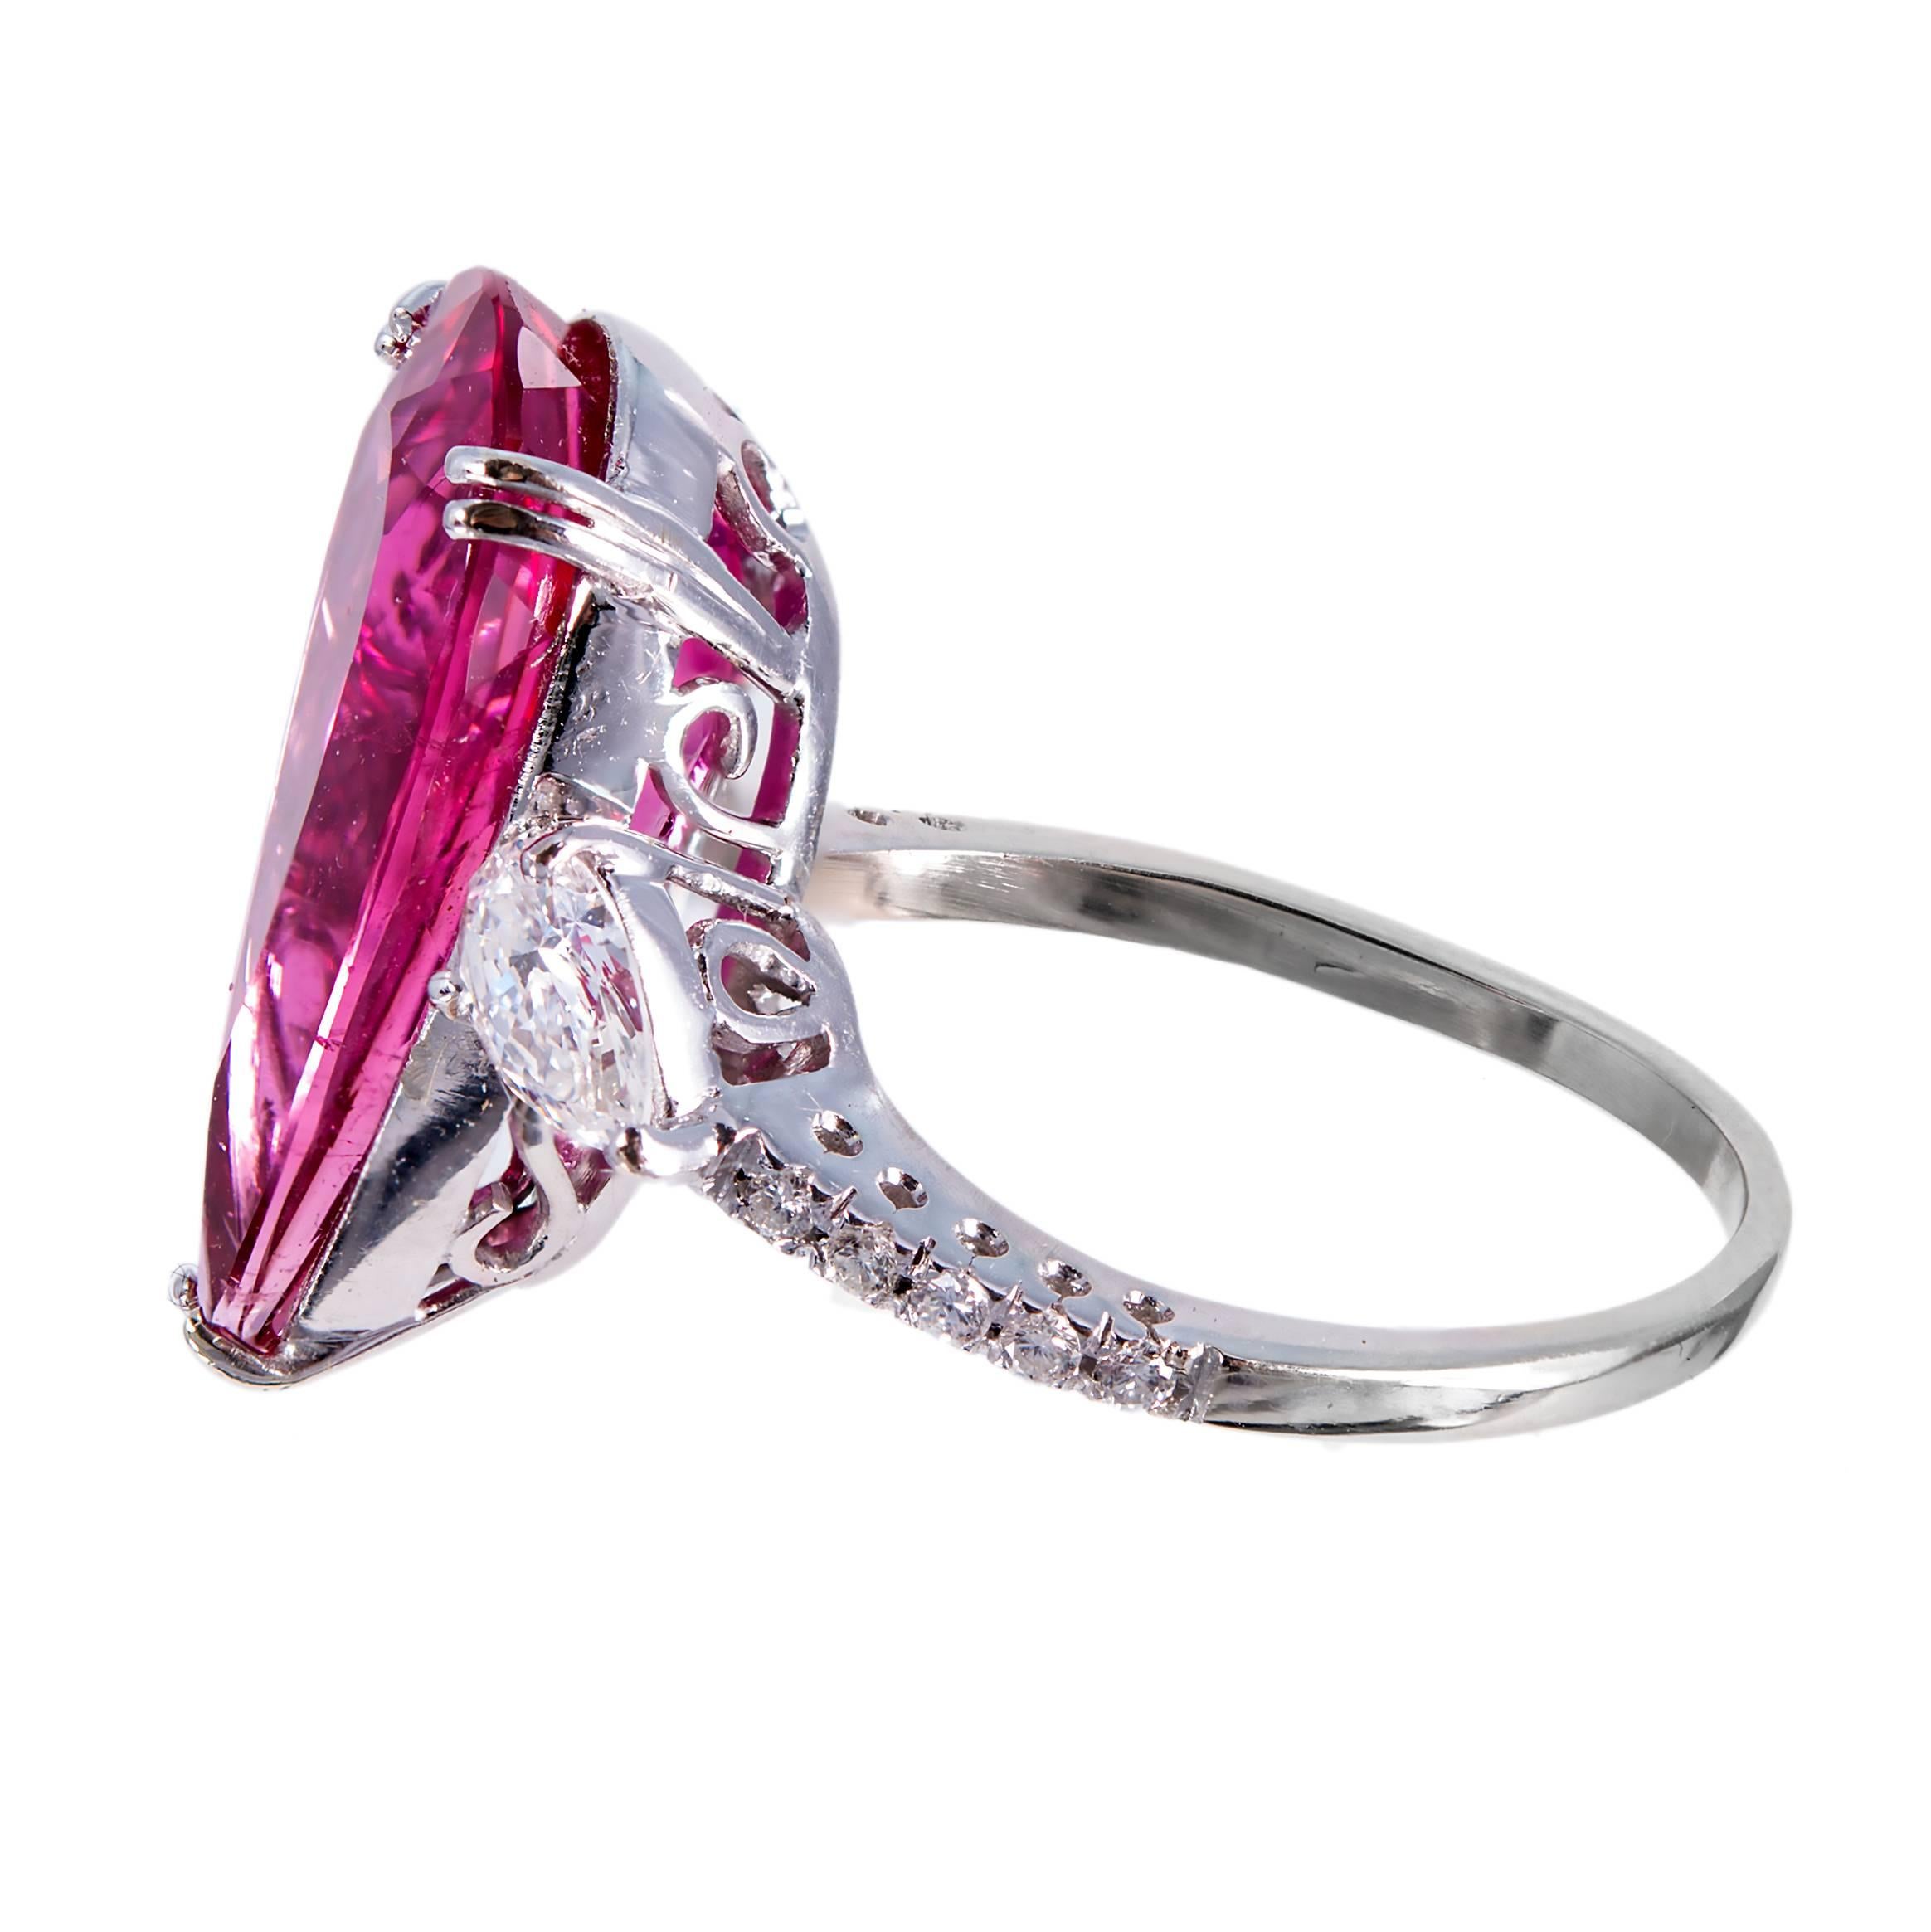 1960er Jahre Rubelit-Turmalin und Diamant-Cocktailring. Länglicher rosa birnenförmiger Rubelit-Turmalin mit zwei birnenförmigen seitlichen Diamanten, akzentuiert mit 10 runden Diamanten.

1 rosaroter Rubelit-Turmalin, Gesamtgewicht ca. 6,55cts,